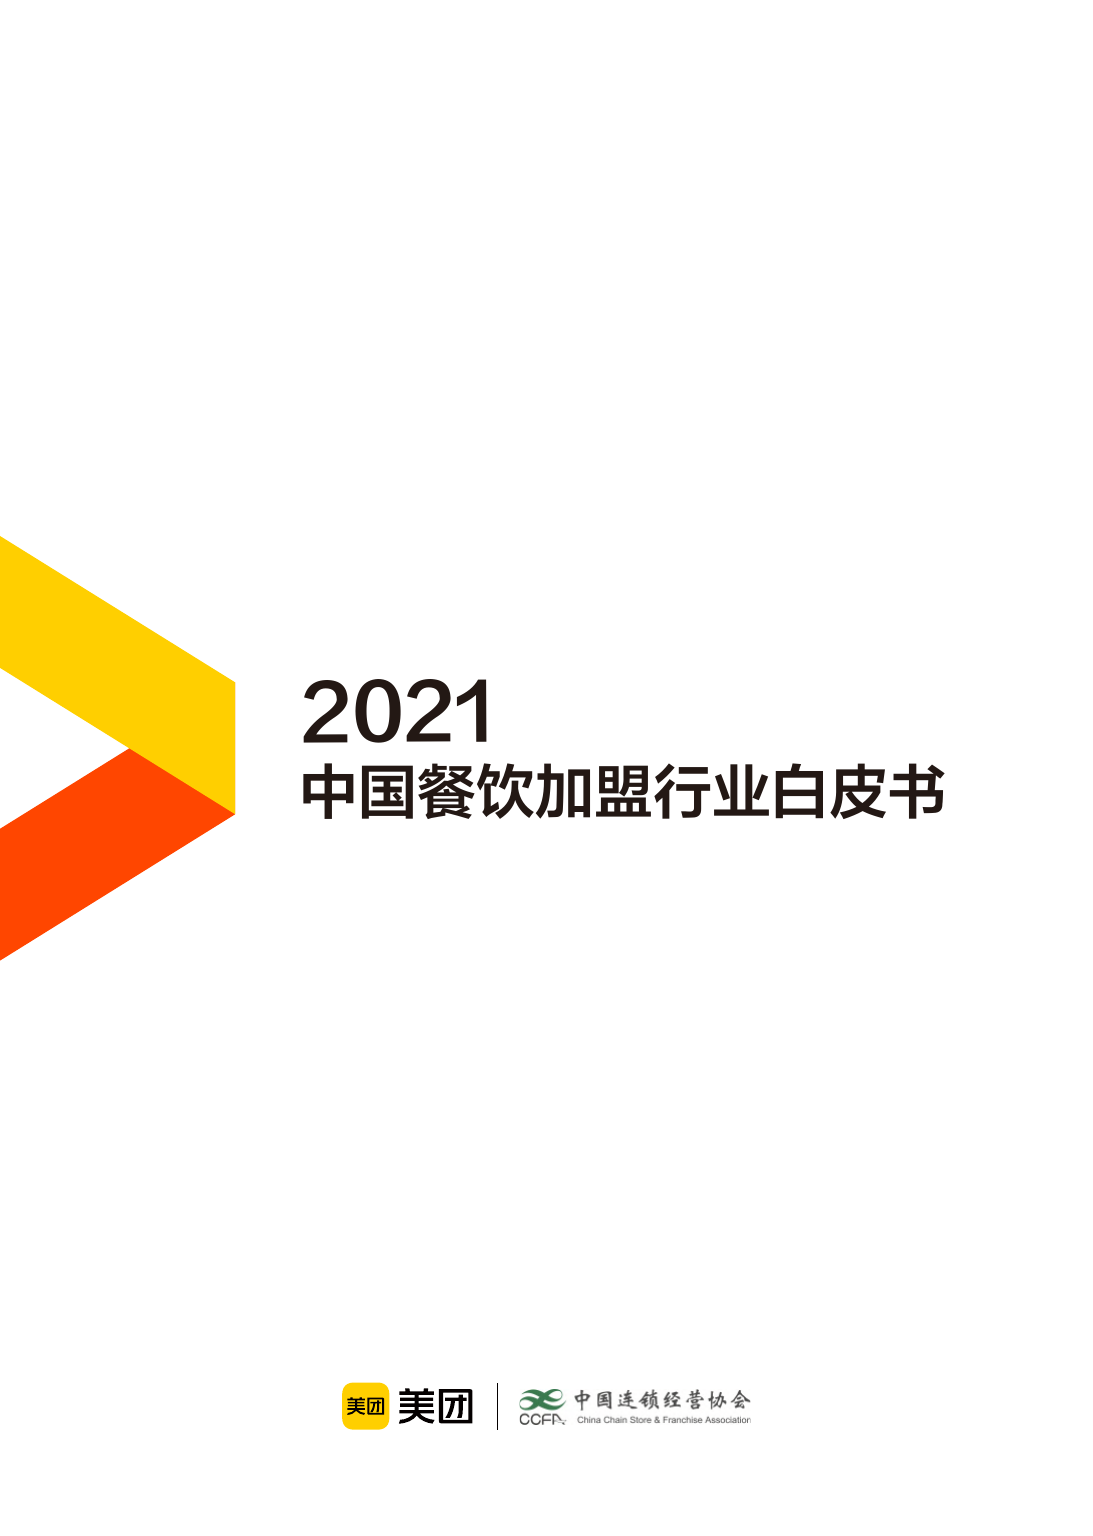 2021中国餐饮加盟行业白皮书-美团&CCFA-2021-32页